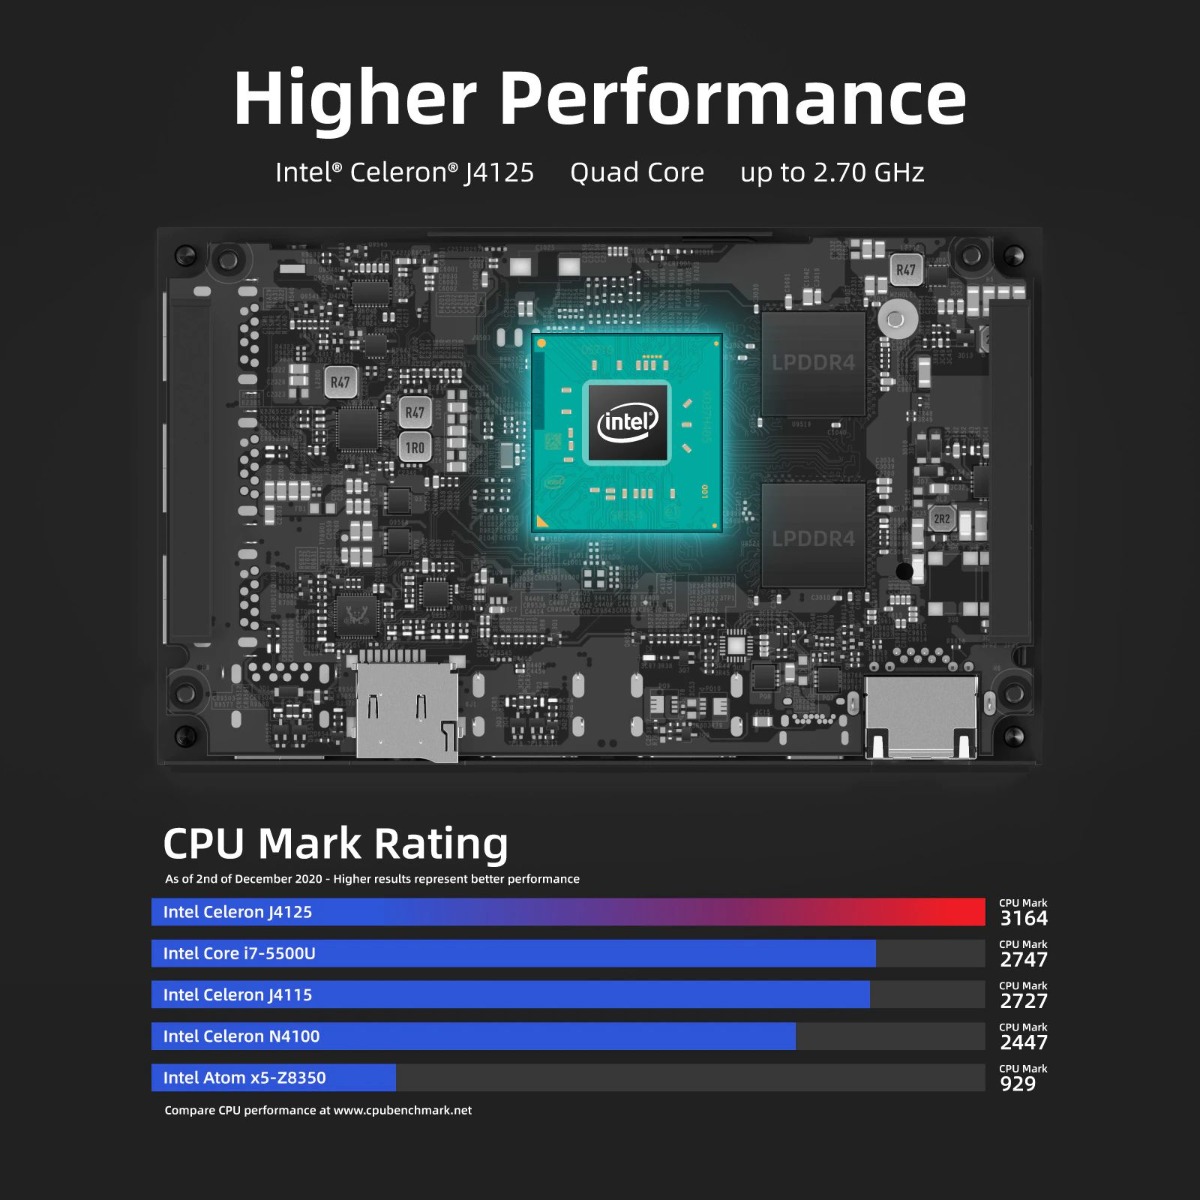 MeLE quieter2q Mini PC Intel Celeron j4125